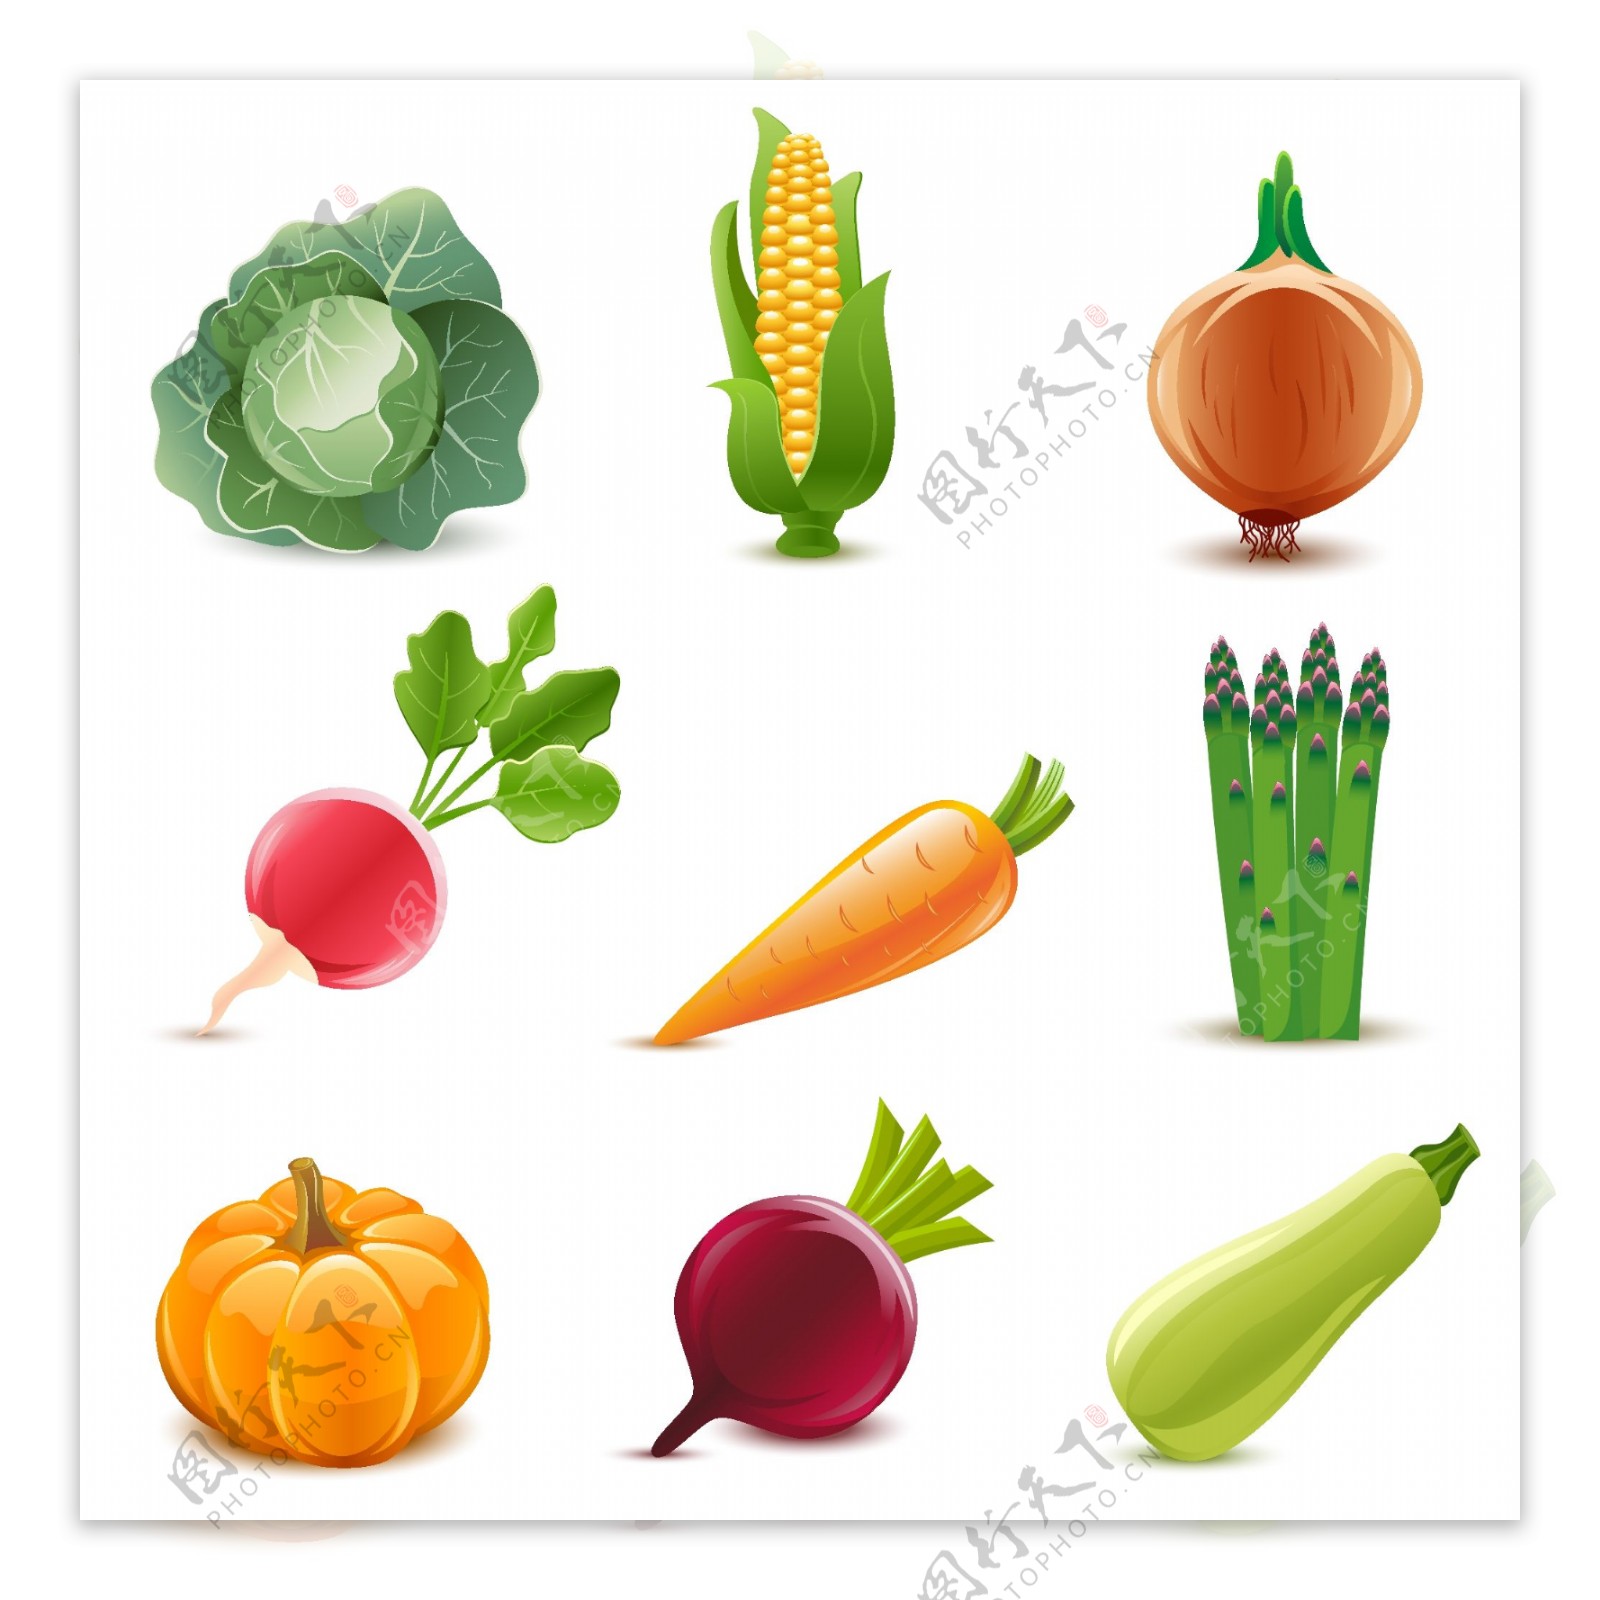 蔬菜设计素材